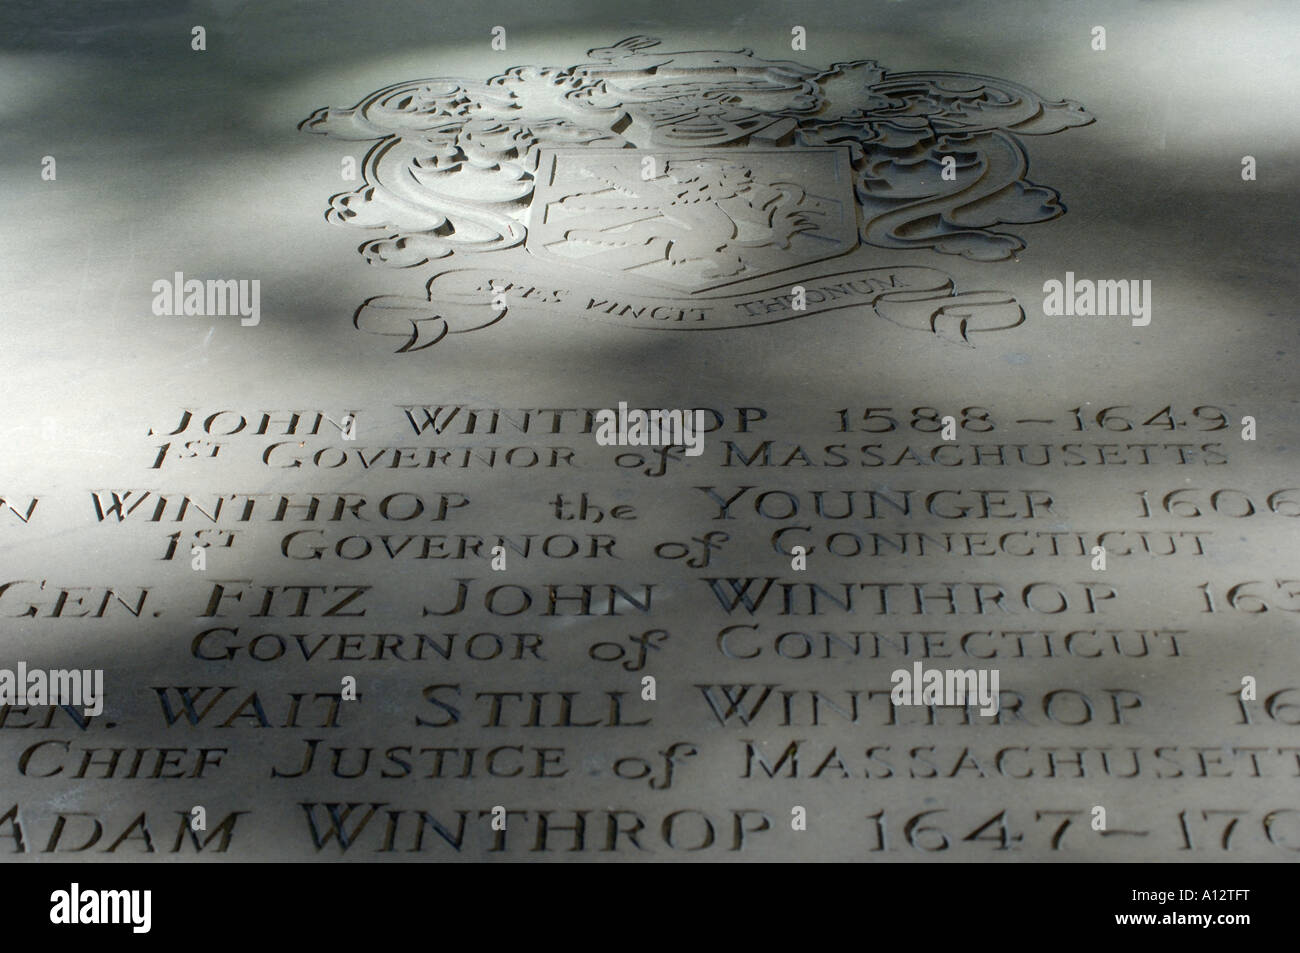 Memorial Grabstein von John Winthrop im Kings Kapelle begraben Boden Boston Massachusetts. Digitale Fotografie Stockfoto